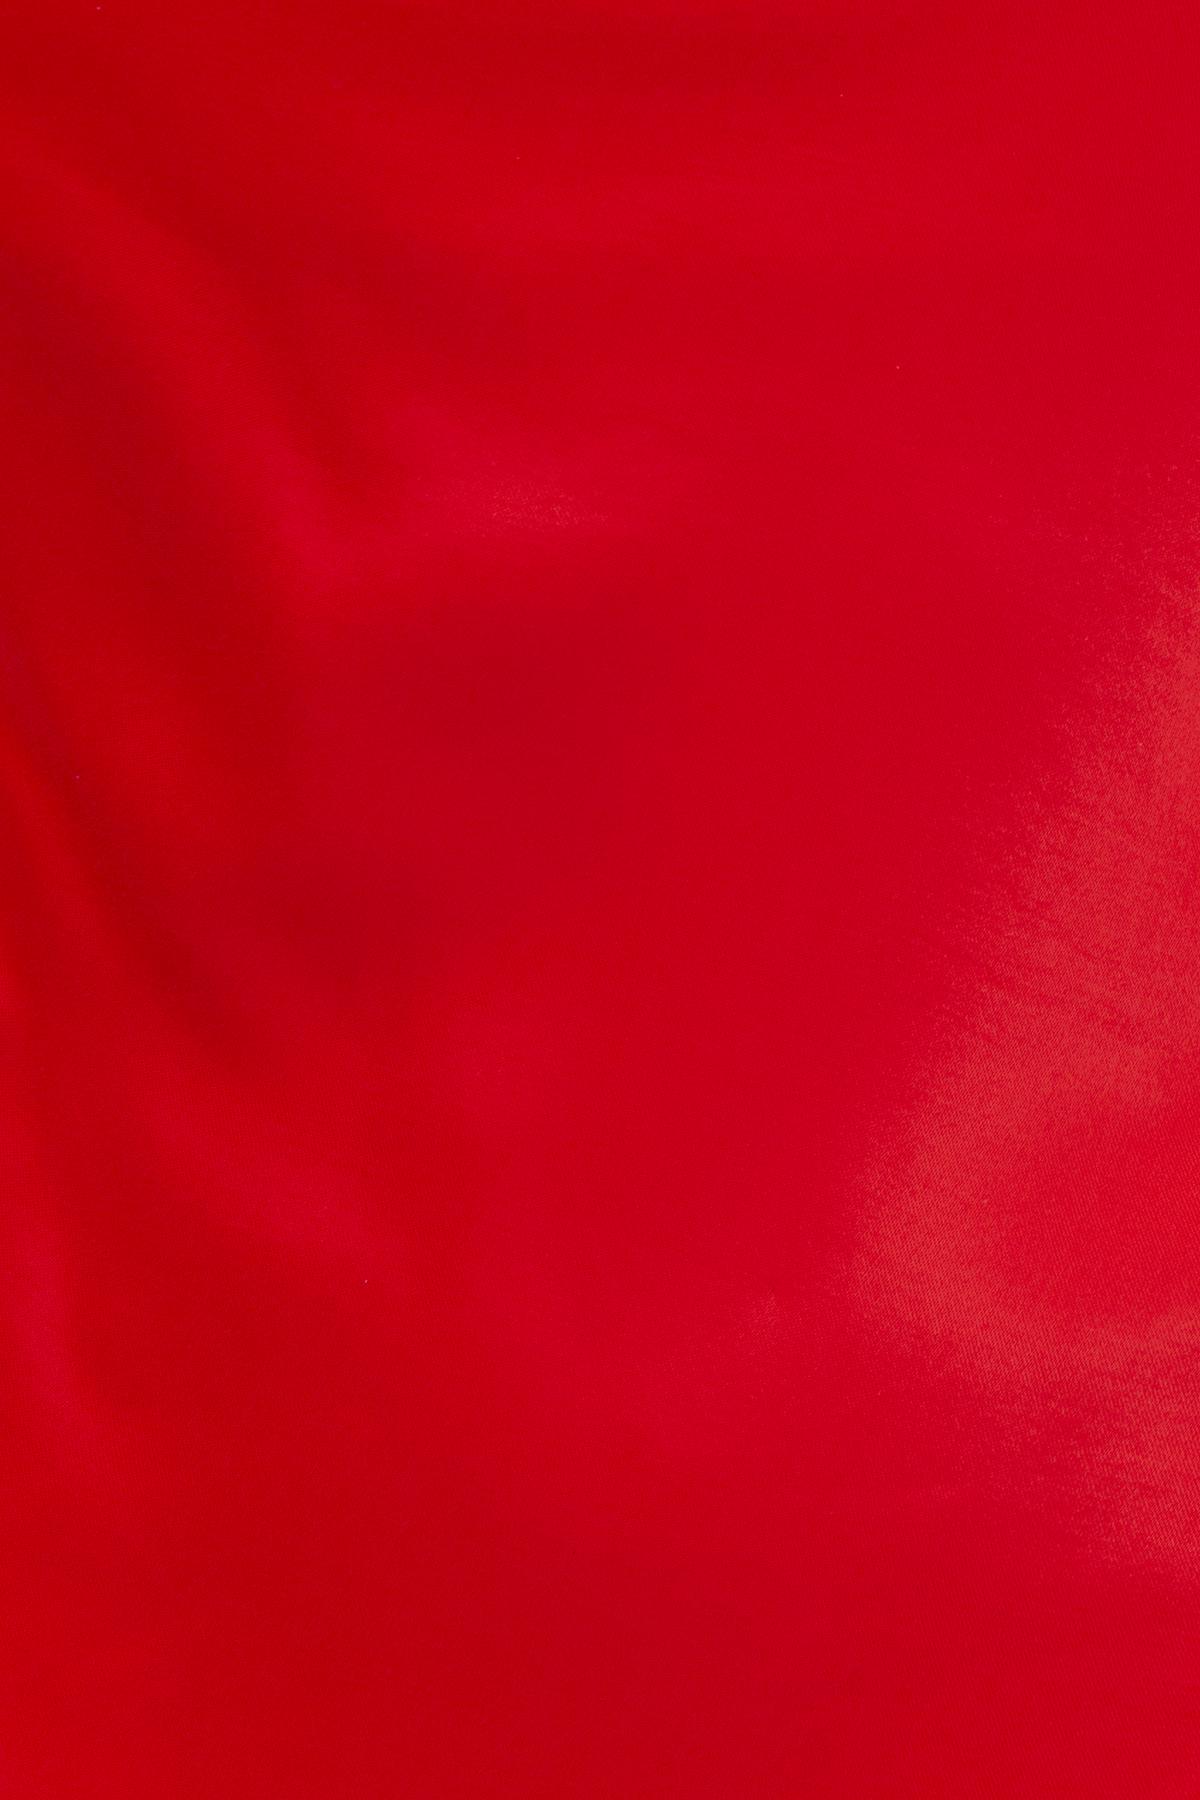 Bayan Kırmızı Degaje Yaka Askılı Mini Elbise